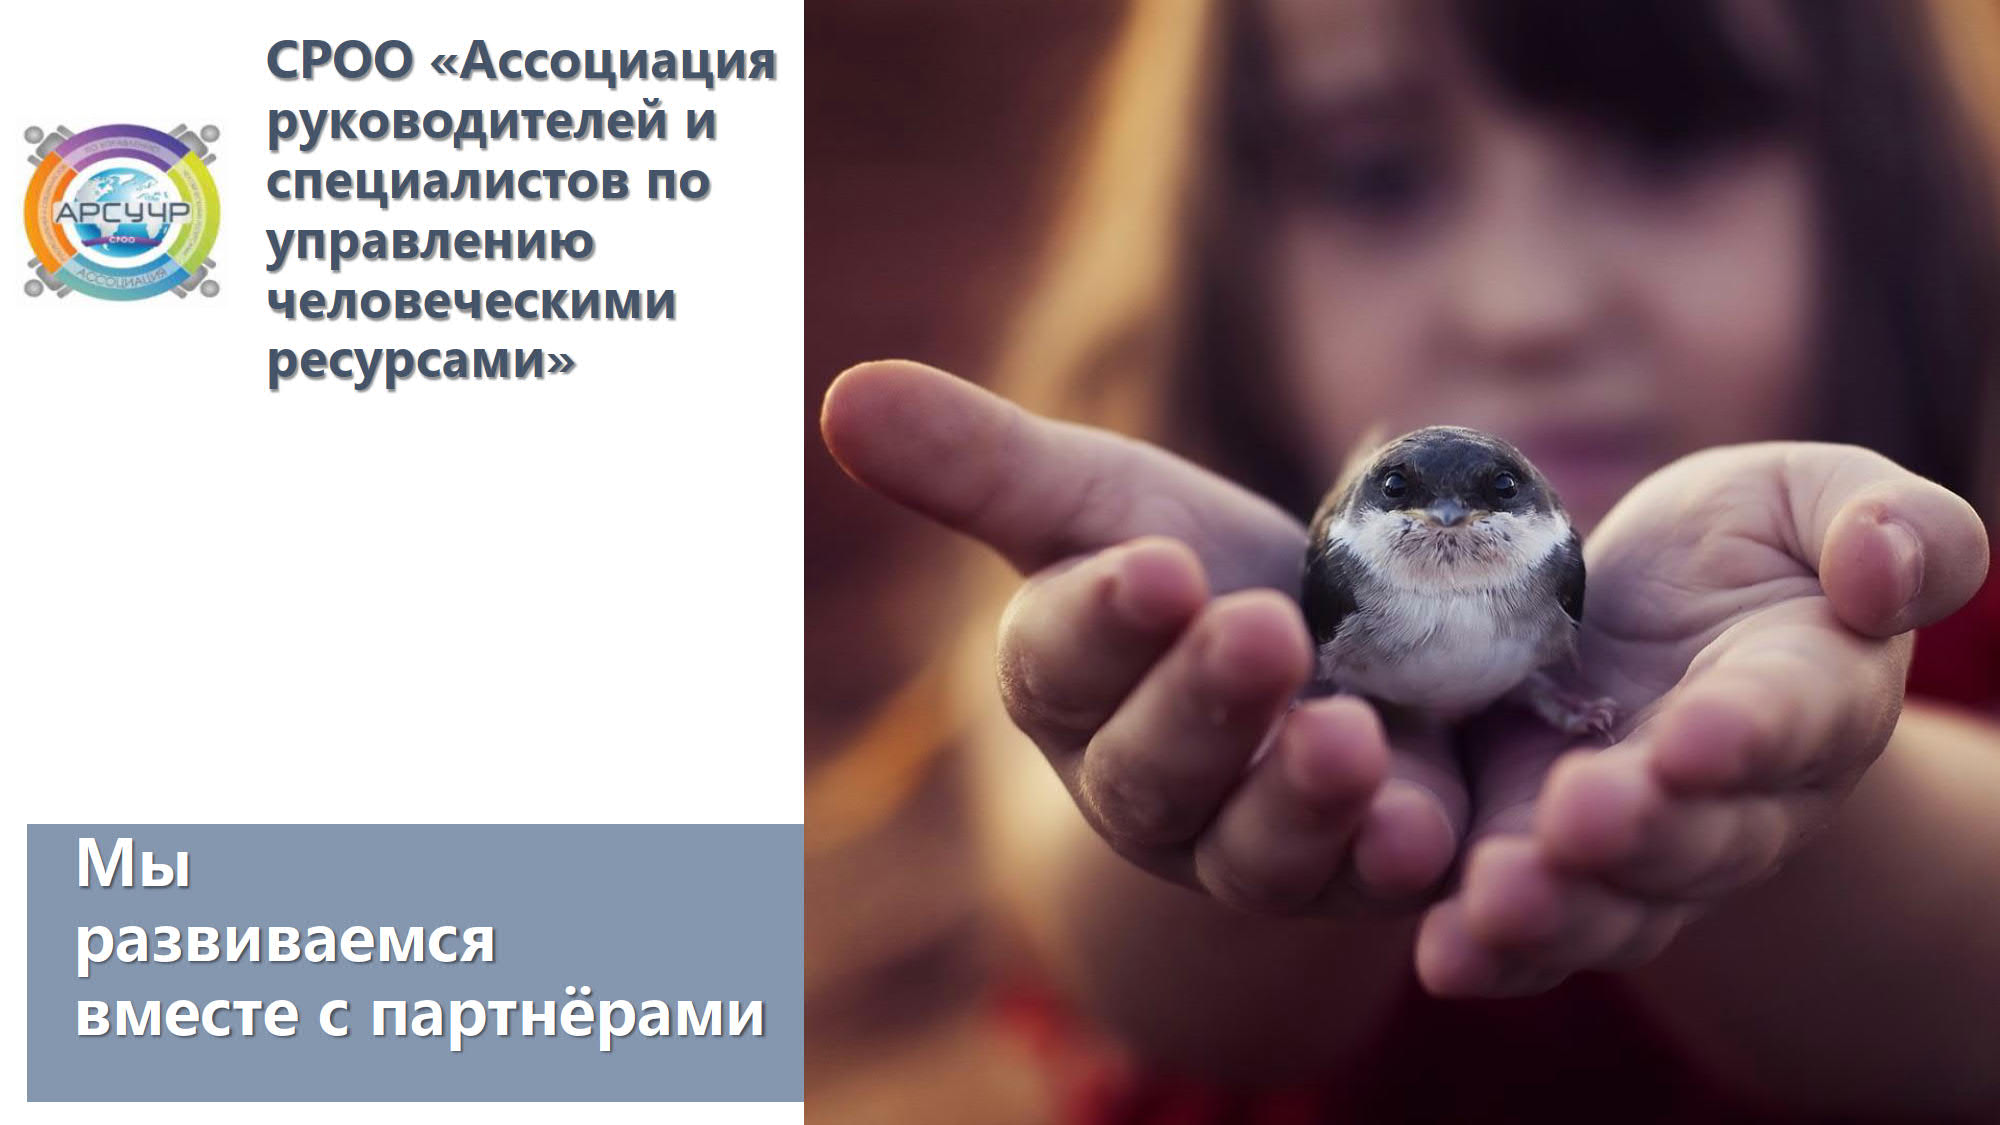 Поздравление с 10-летием Ассоциации от Светланы Долженко, президента АРС УЧР!